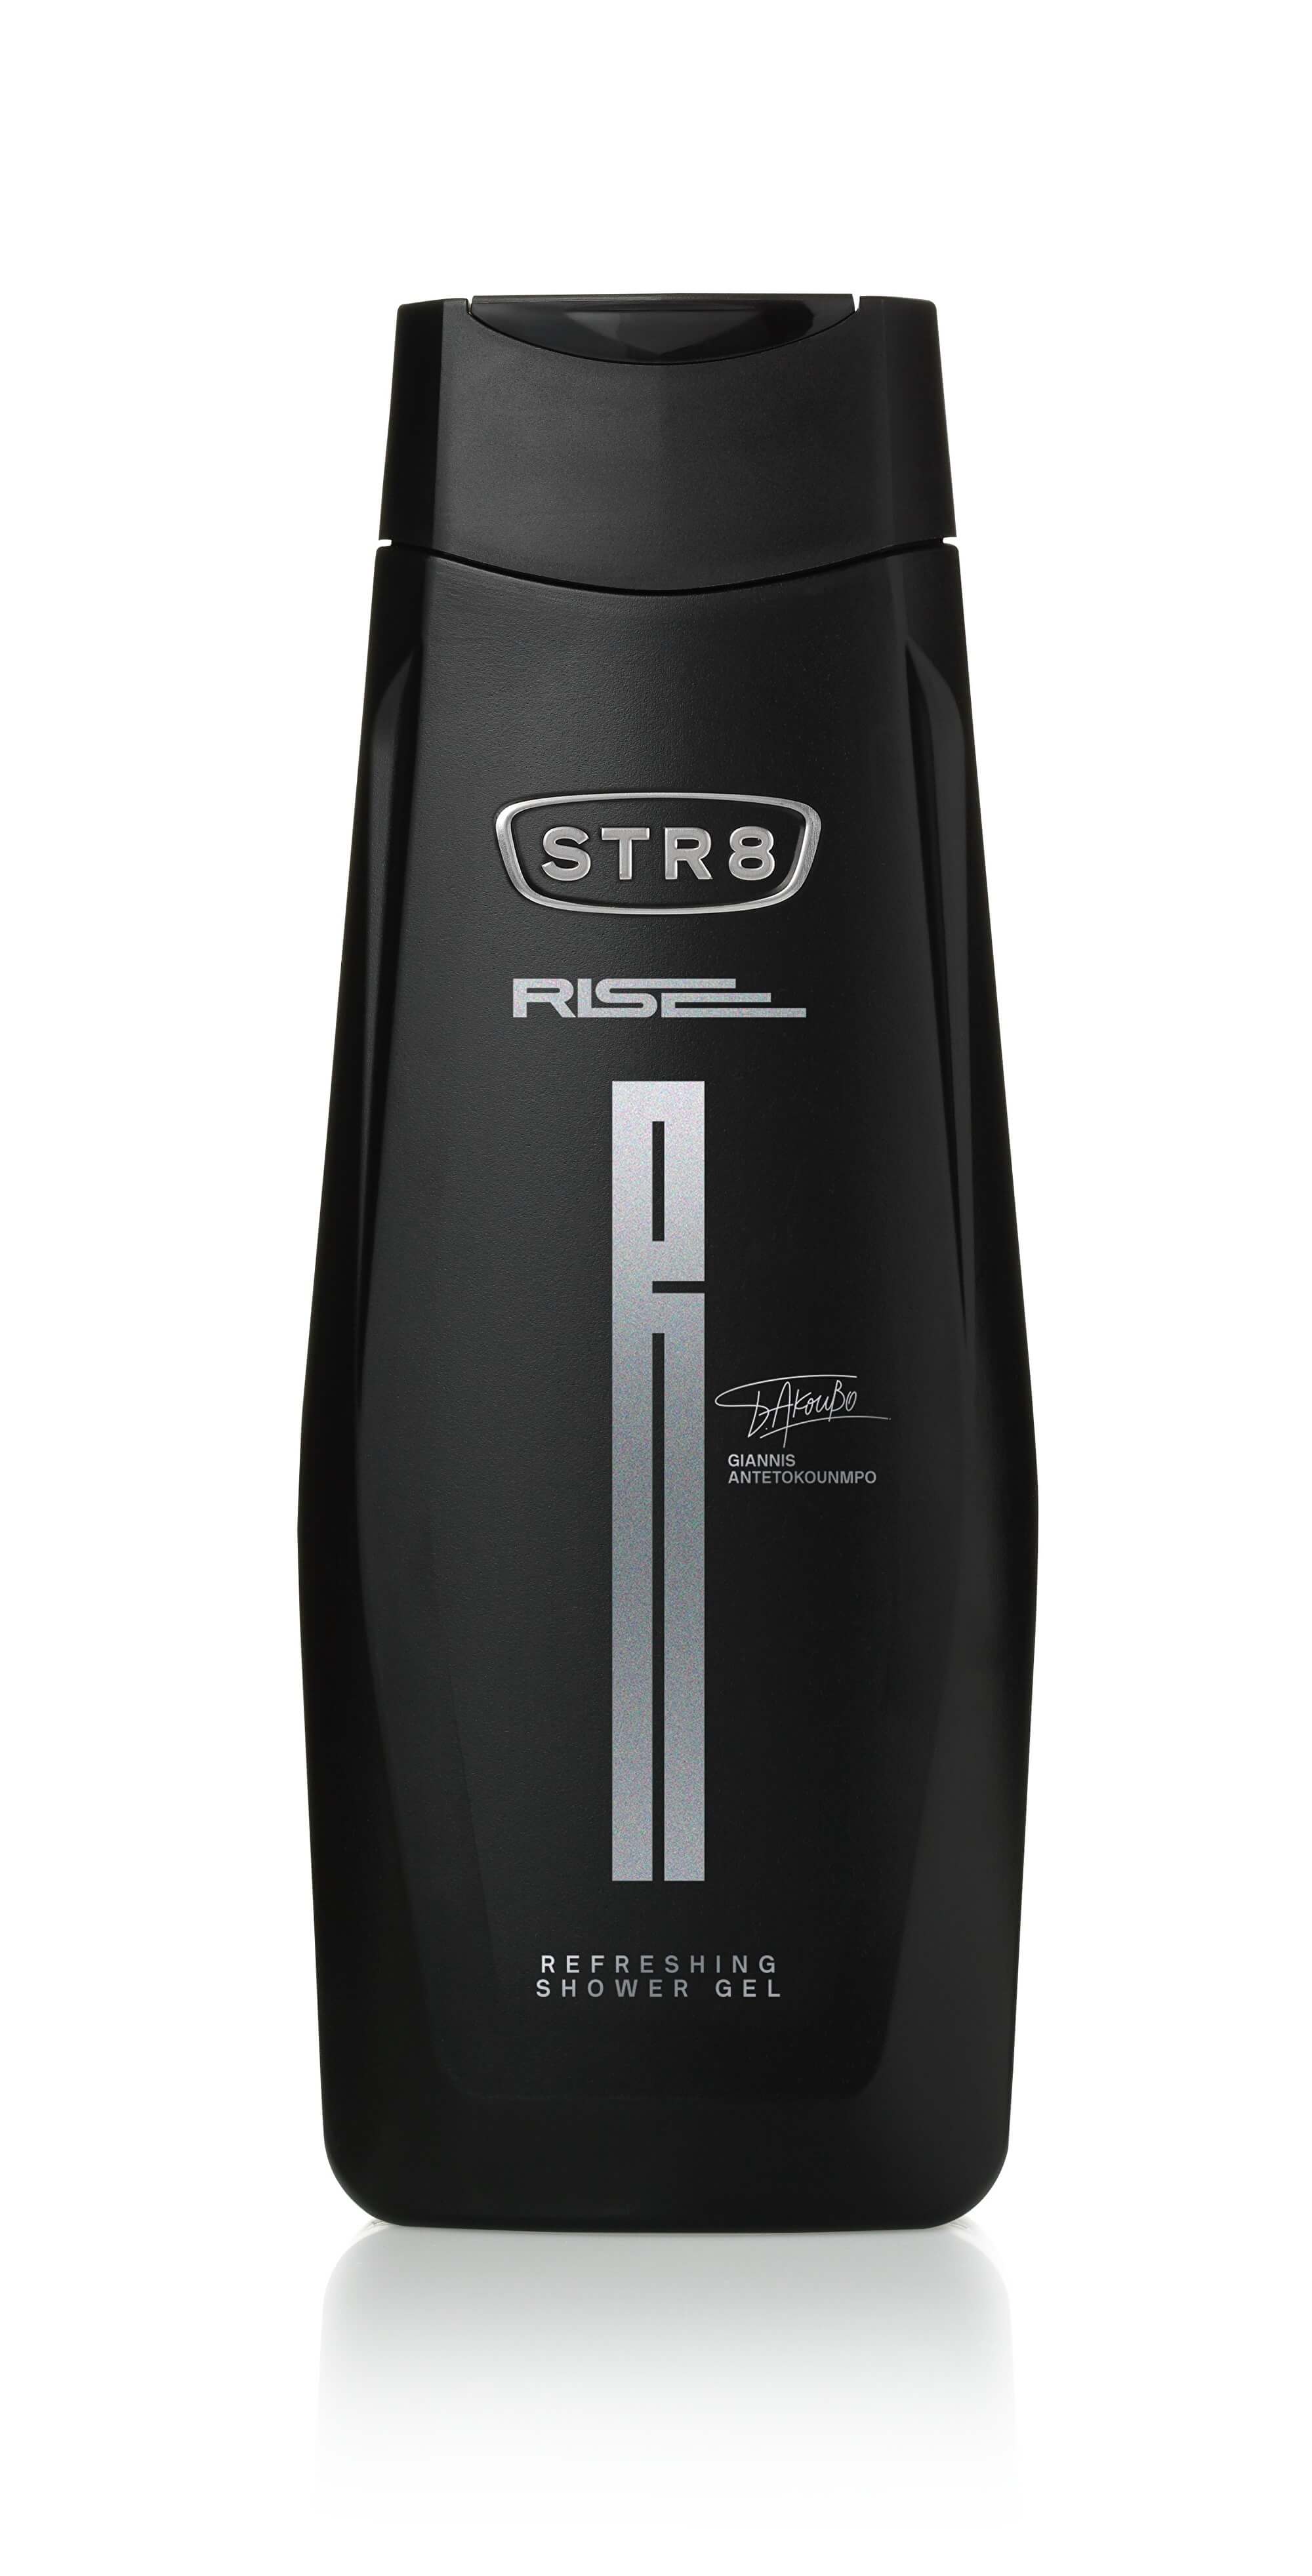 STR8 Rise - sprchový gel 250 ml + 2 mesiace na vrátenie tovaru